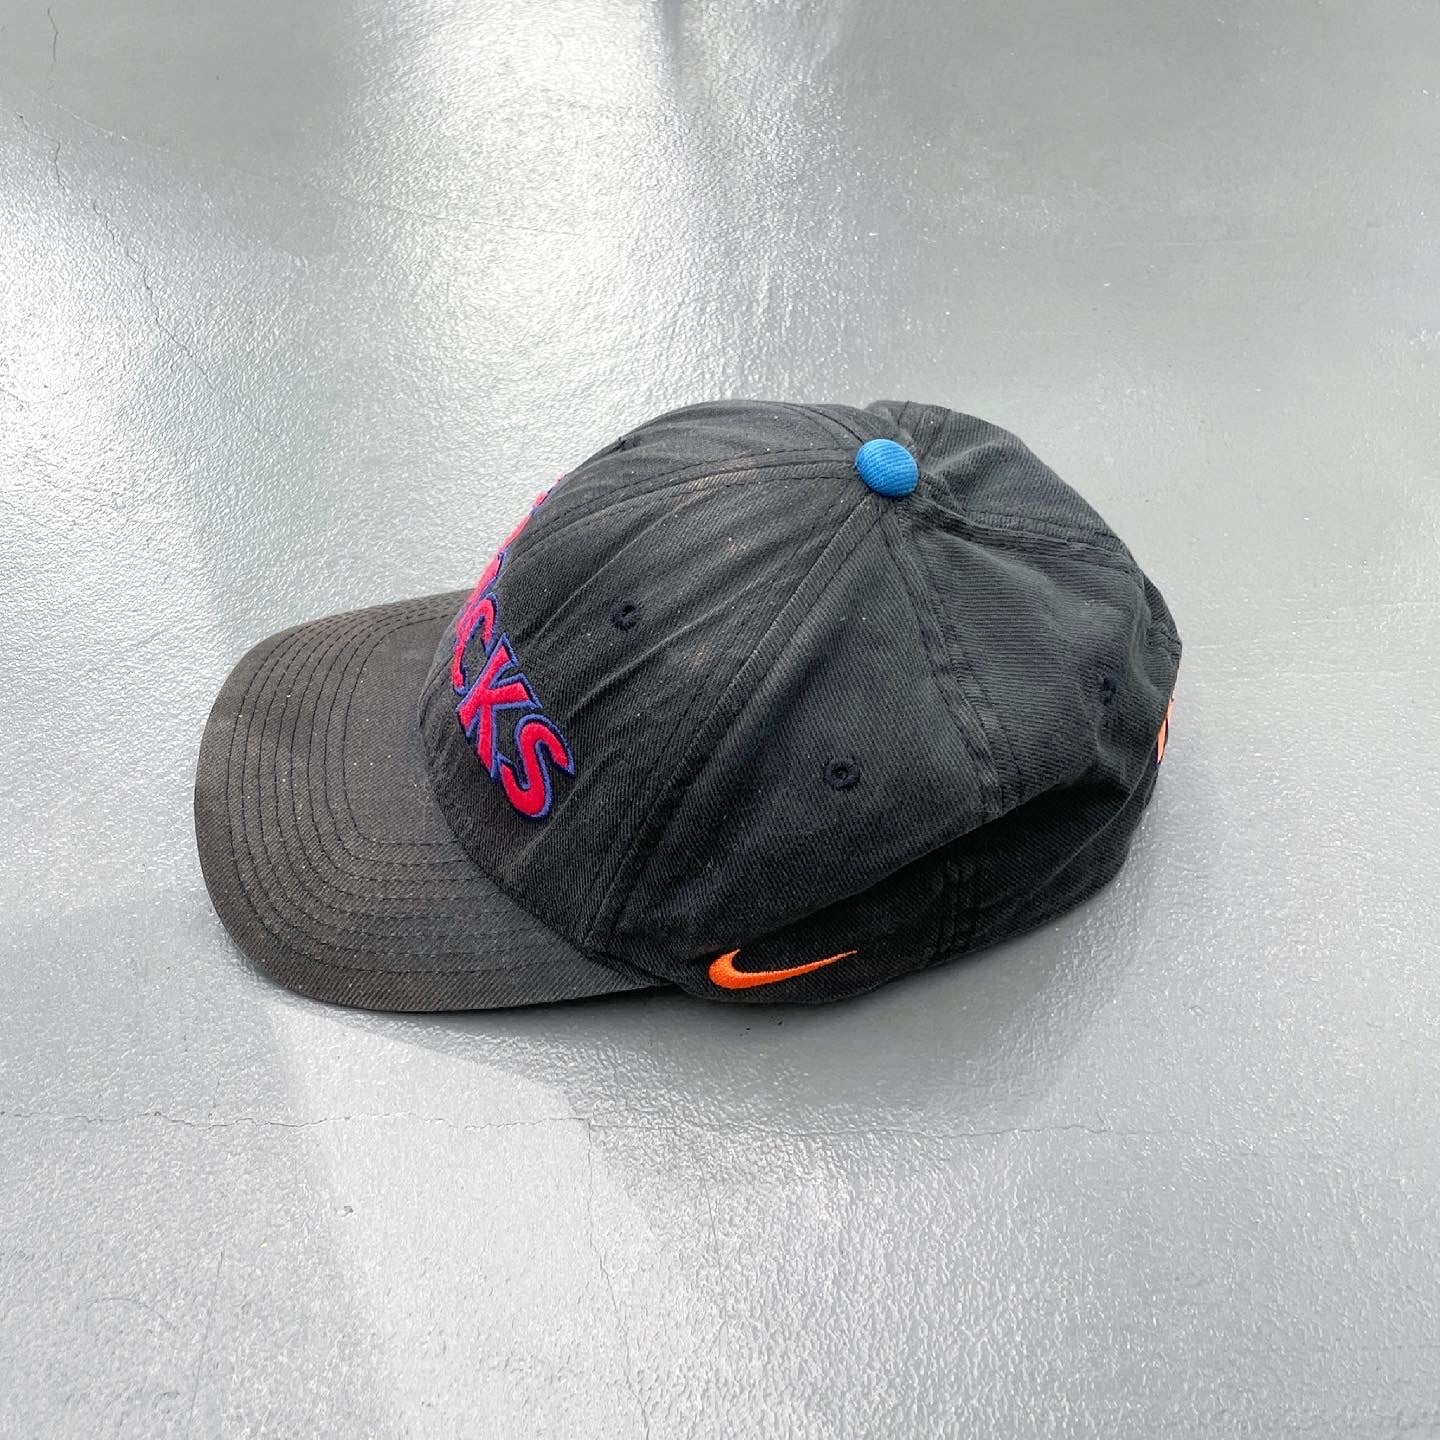 New York Knicks x Nike Cap